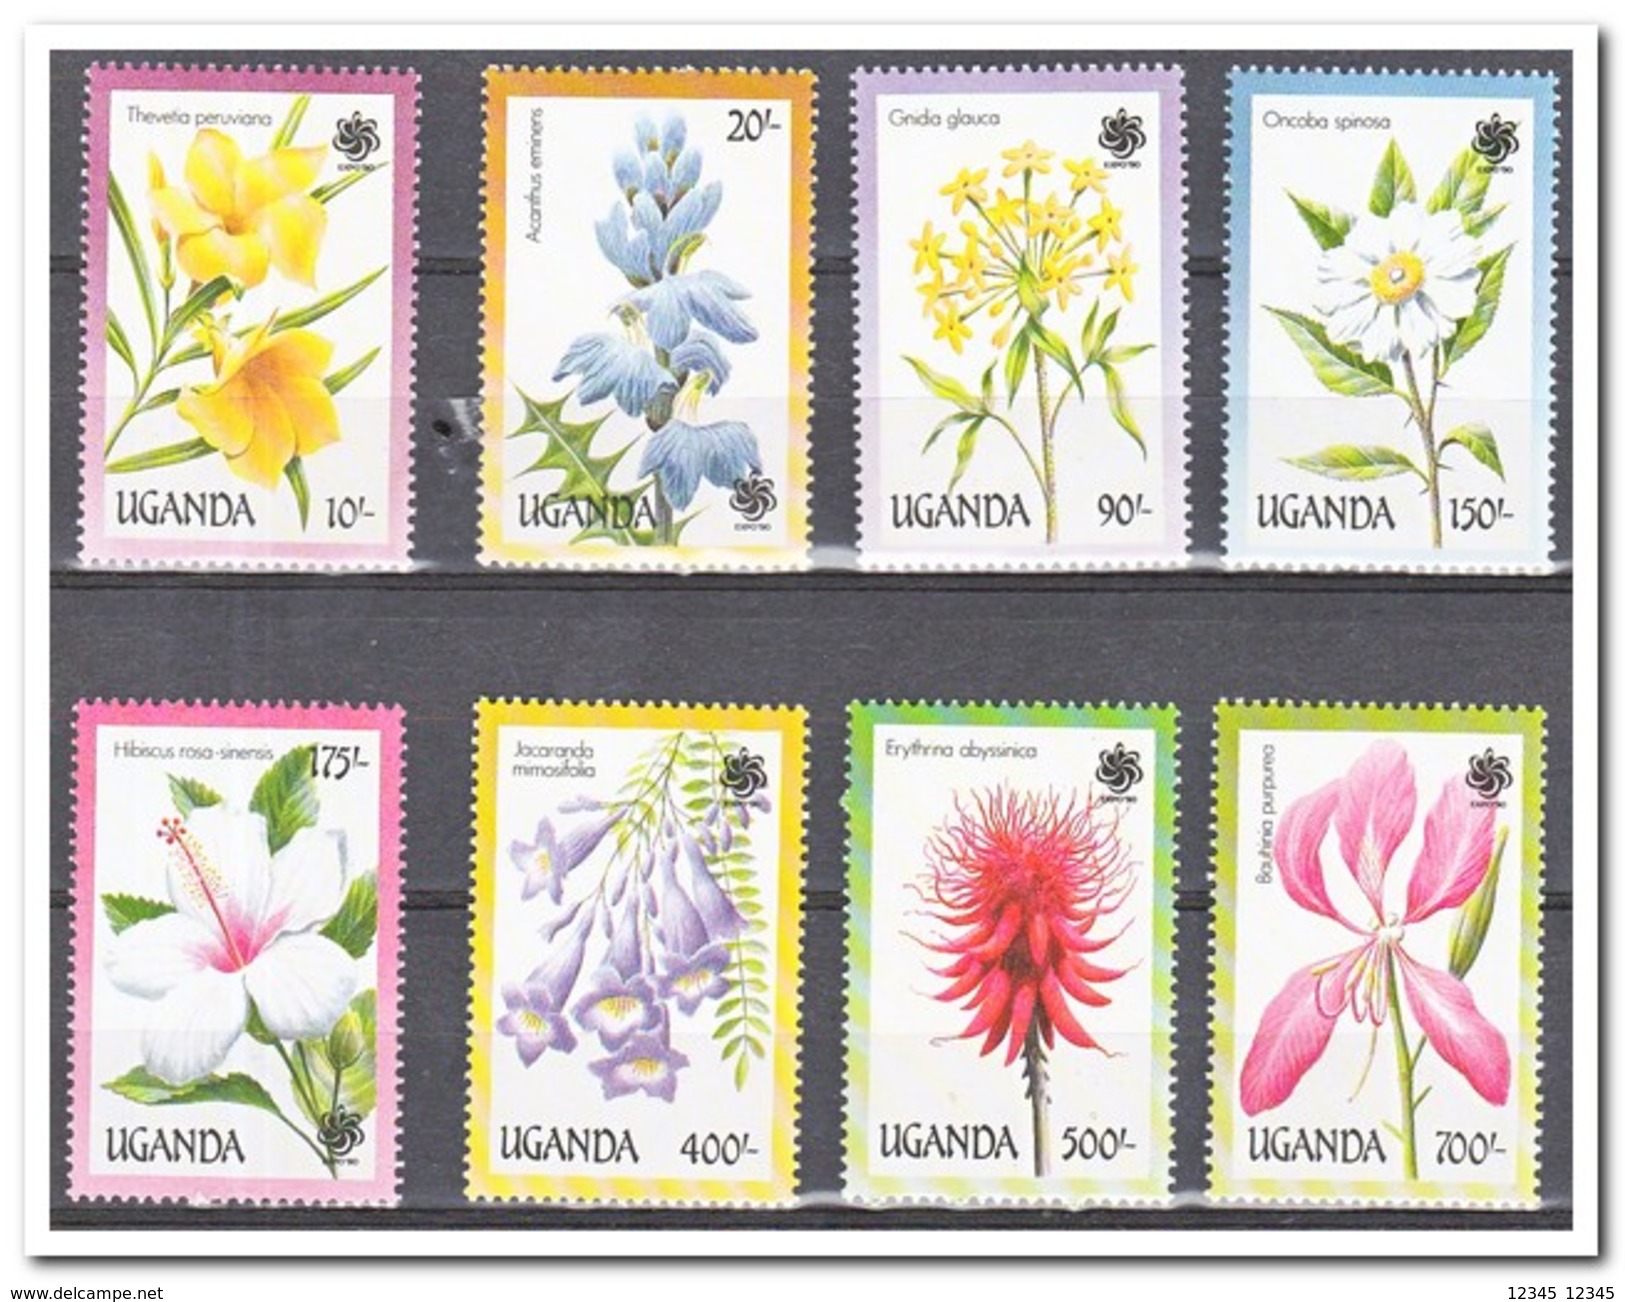 Uganda 1990, Postfris MNH, Flowers - Uganda (1962-...)